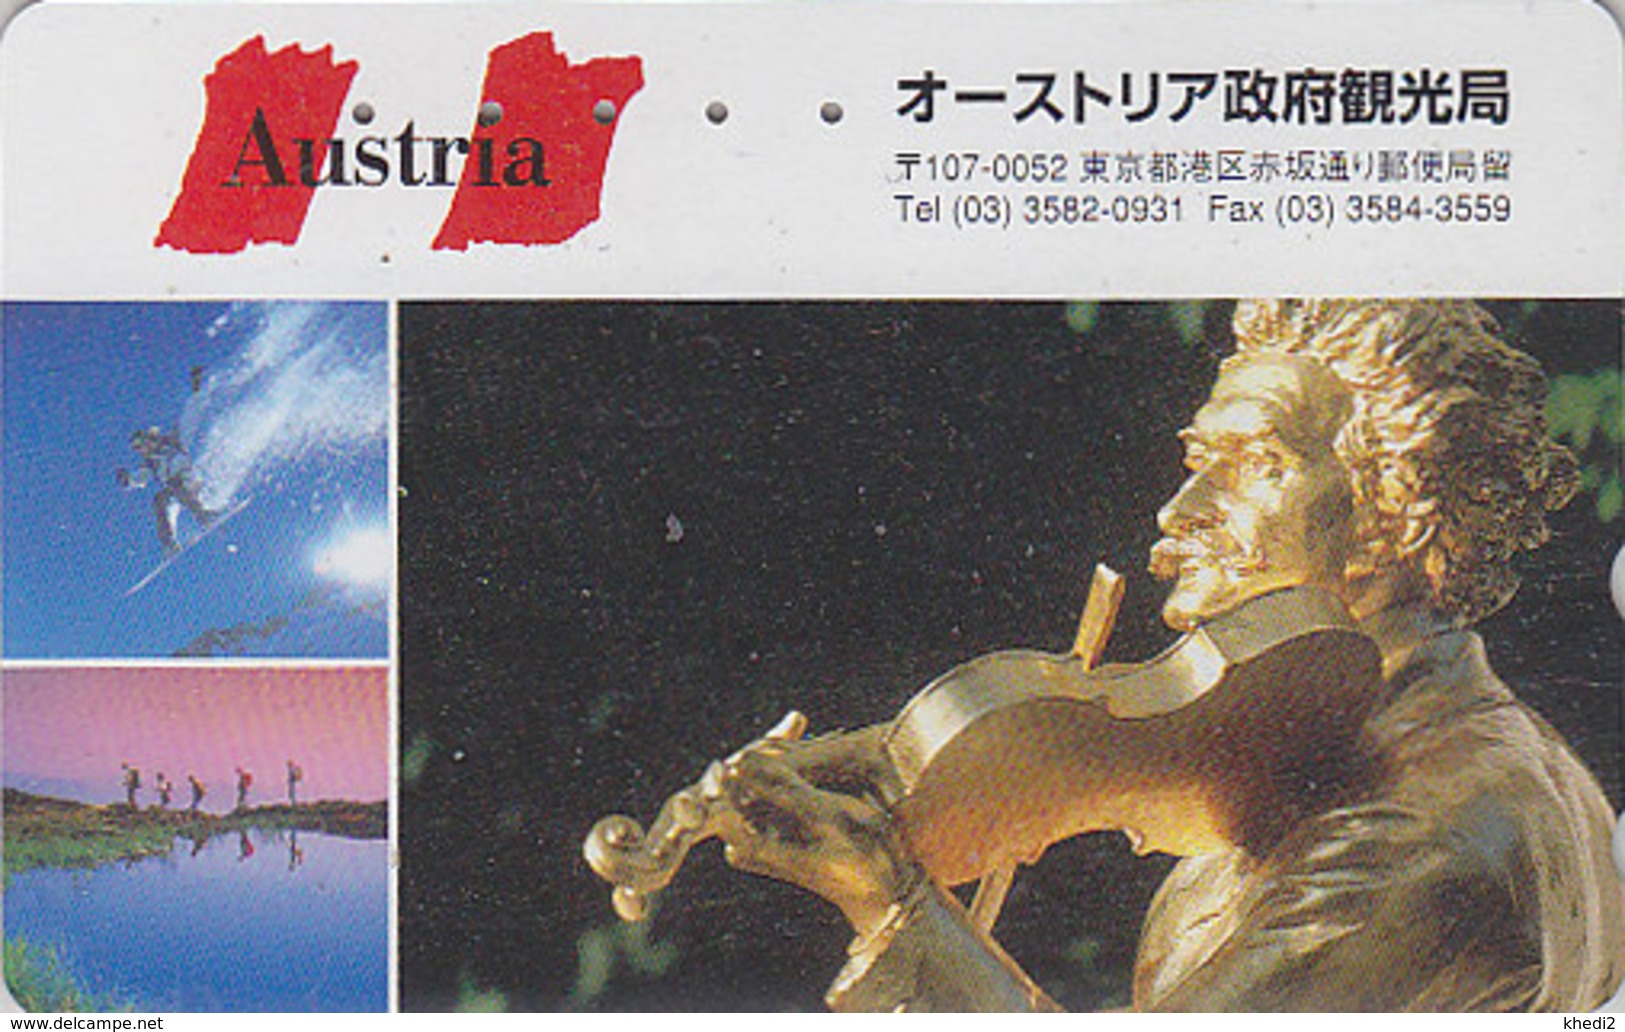 Télécarte Japon / 110-016 - Série 1000 ANS AUTRICHE - Musique STRAUSS & Violon - Japan Phonecard - AUSTRIA Rel TK - 10 - Musik